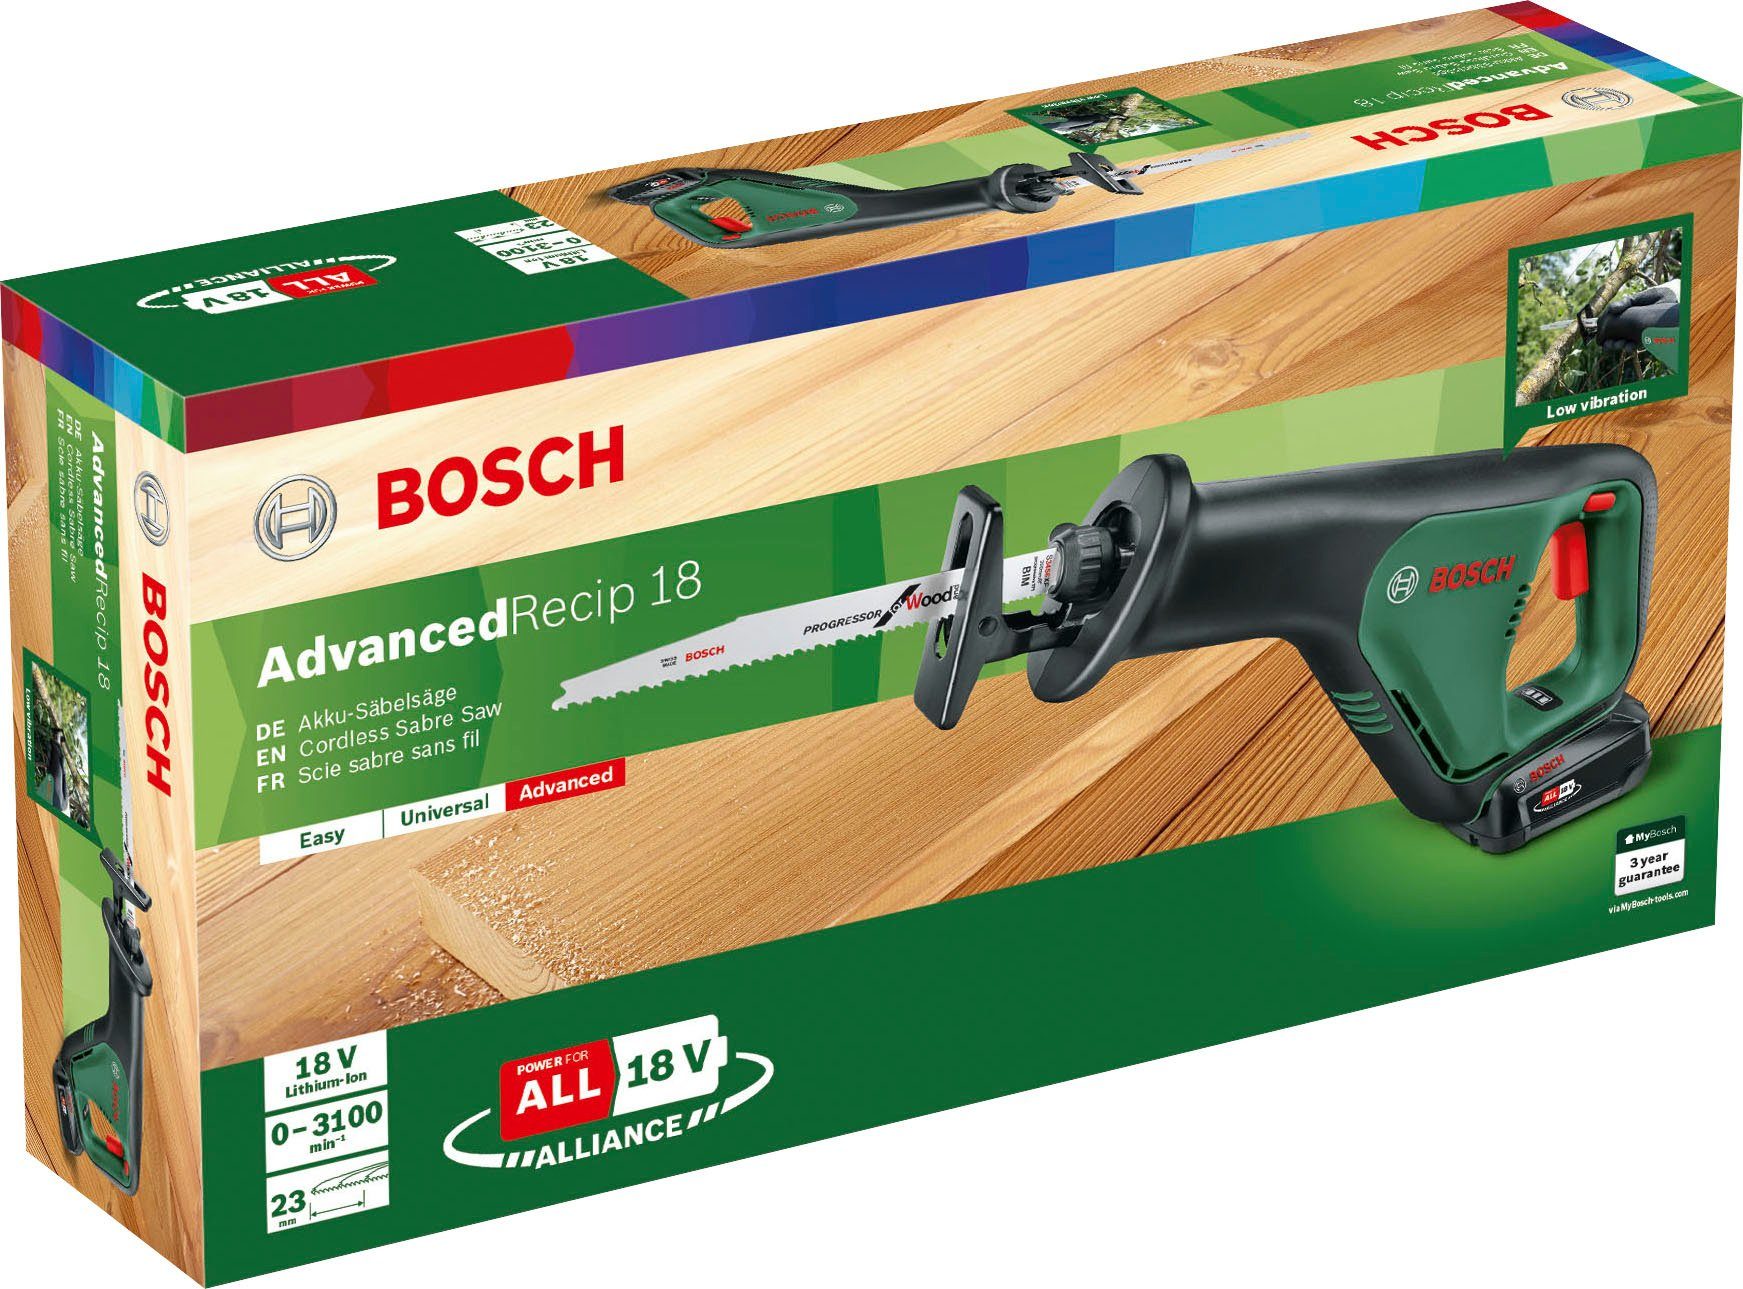 & 18, Ladegerät Home AdvancedRecip und Akku Garden Akku-Säbelsäge inkl. Bosch